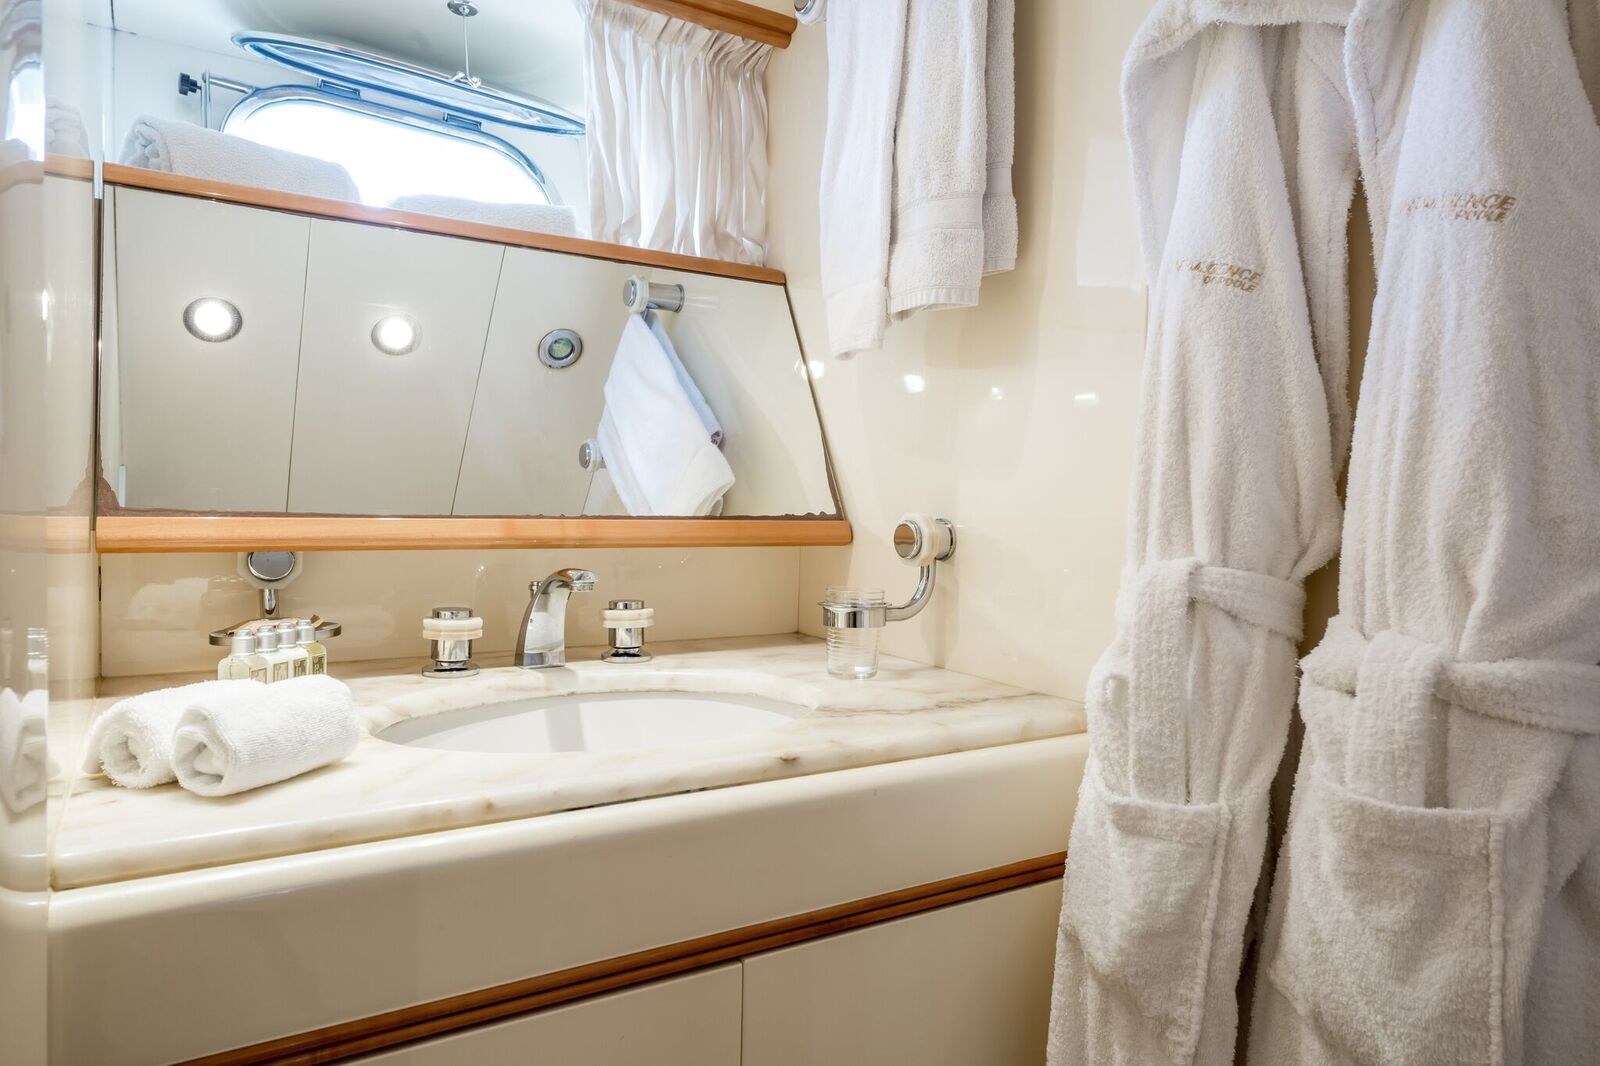 INDULGENCE OF POOLE Mangusta 86 Luxury Superyacht Bathroom